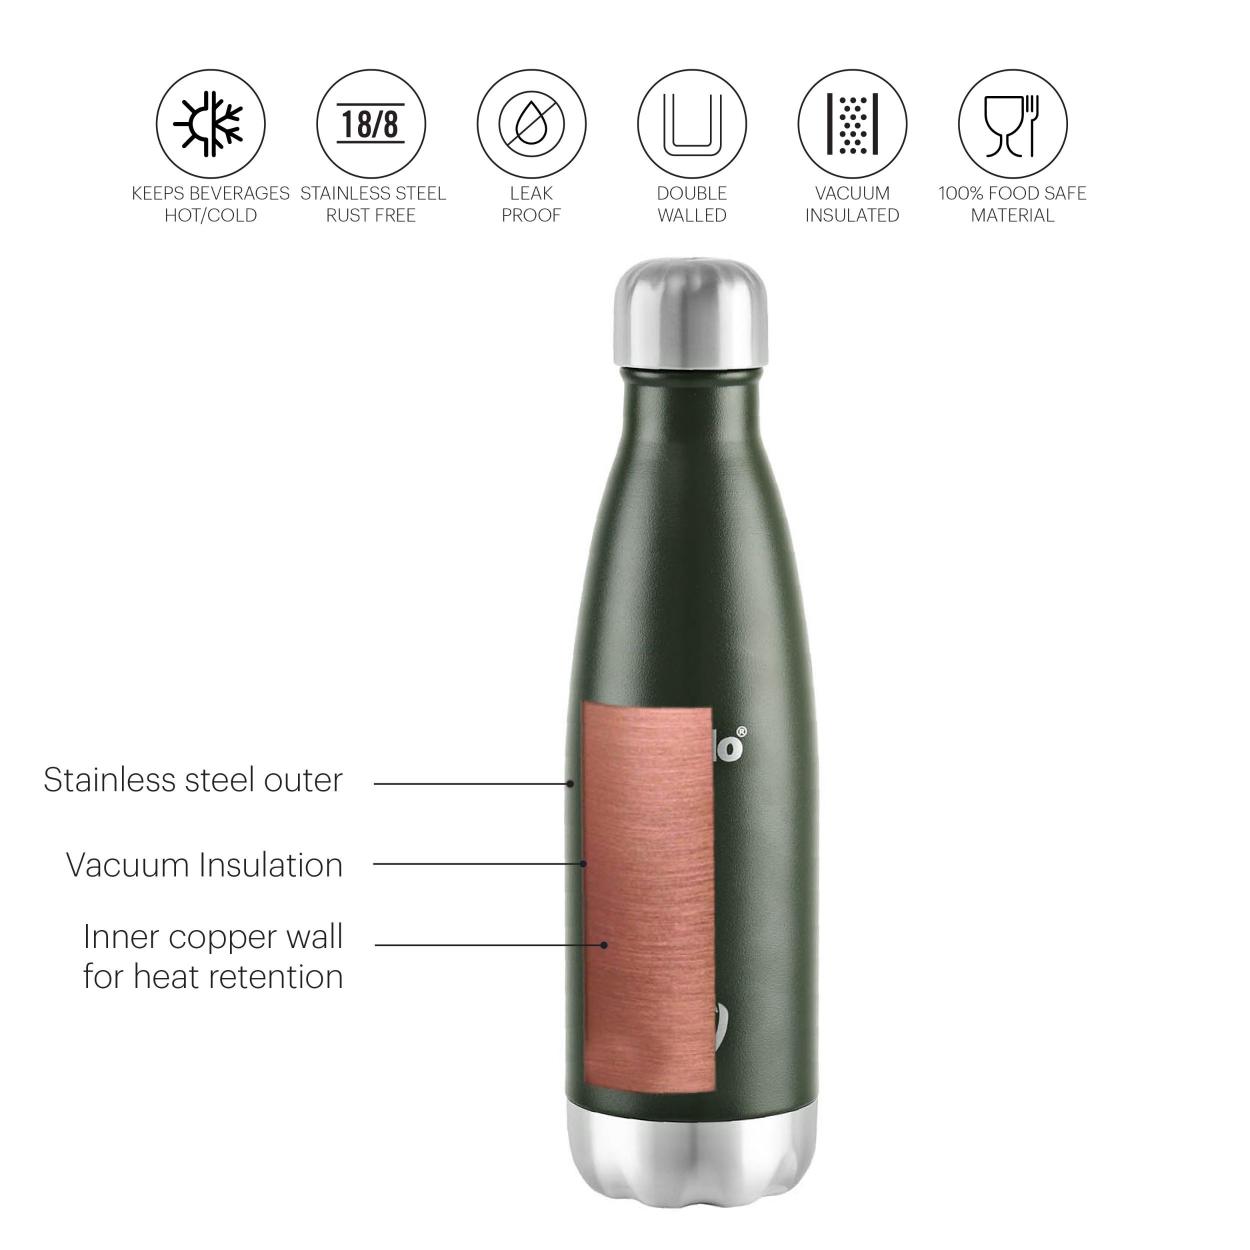 Duro Swift Flask, Vacusteel Water Bottle, 750ml Green / 750ml